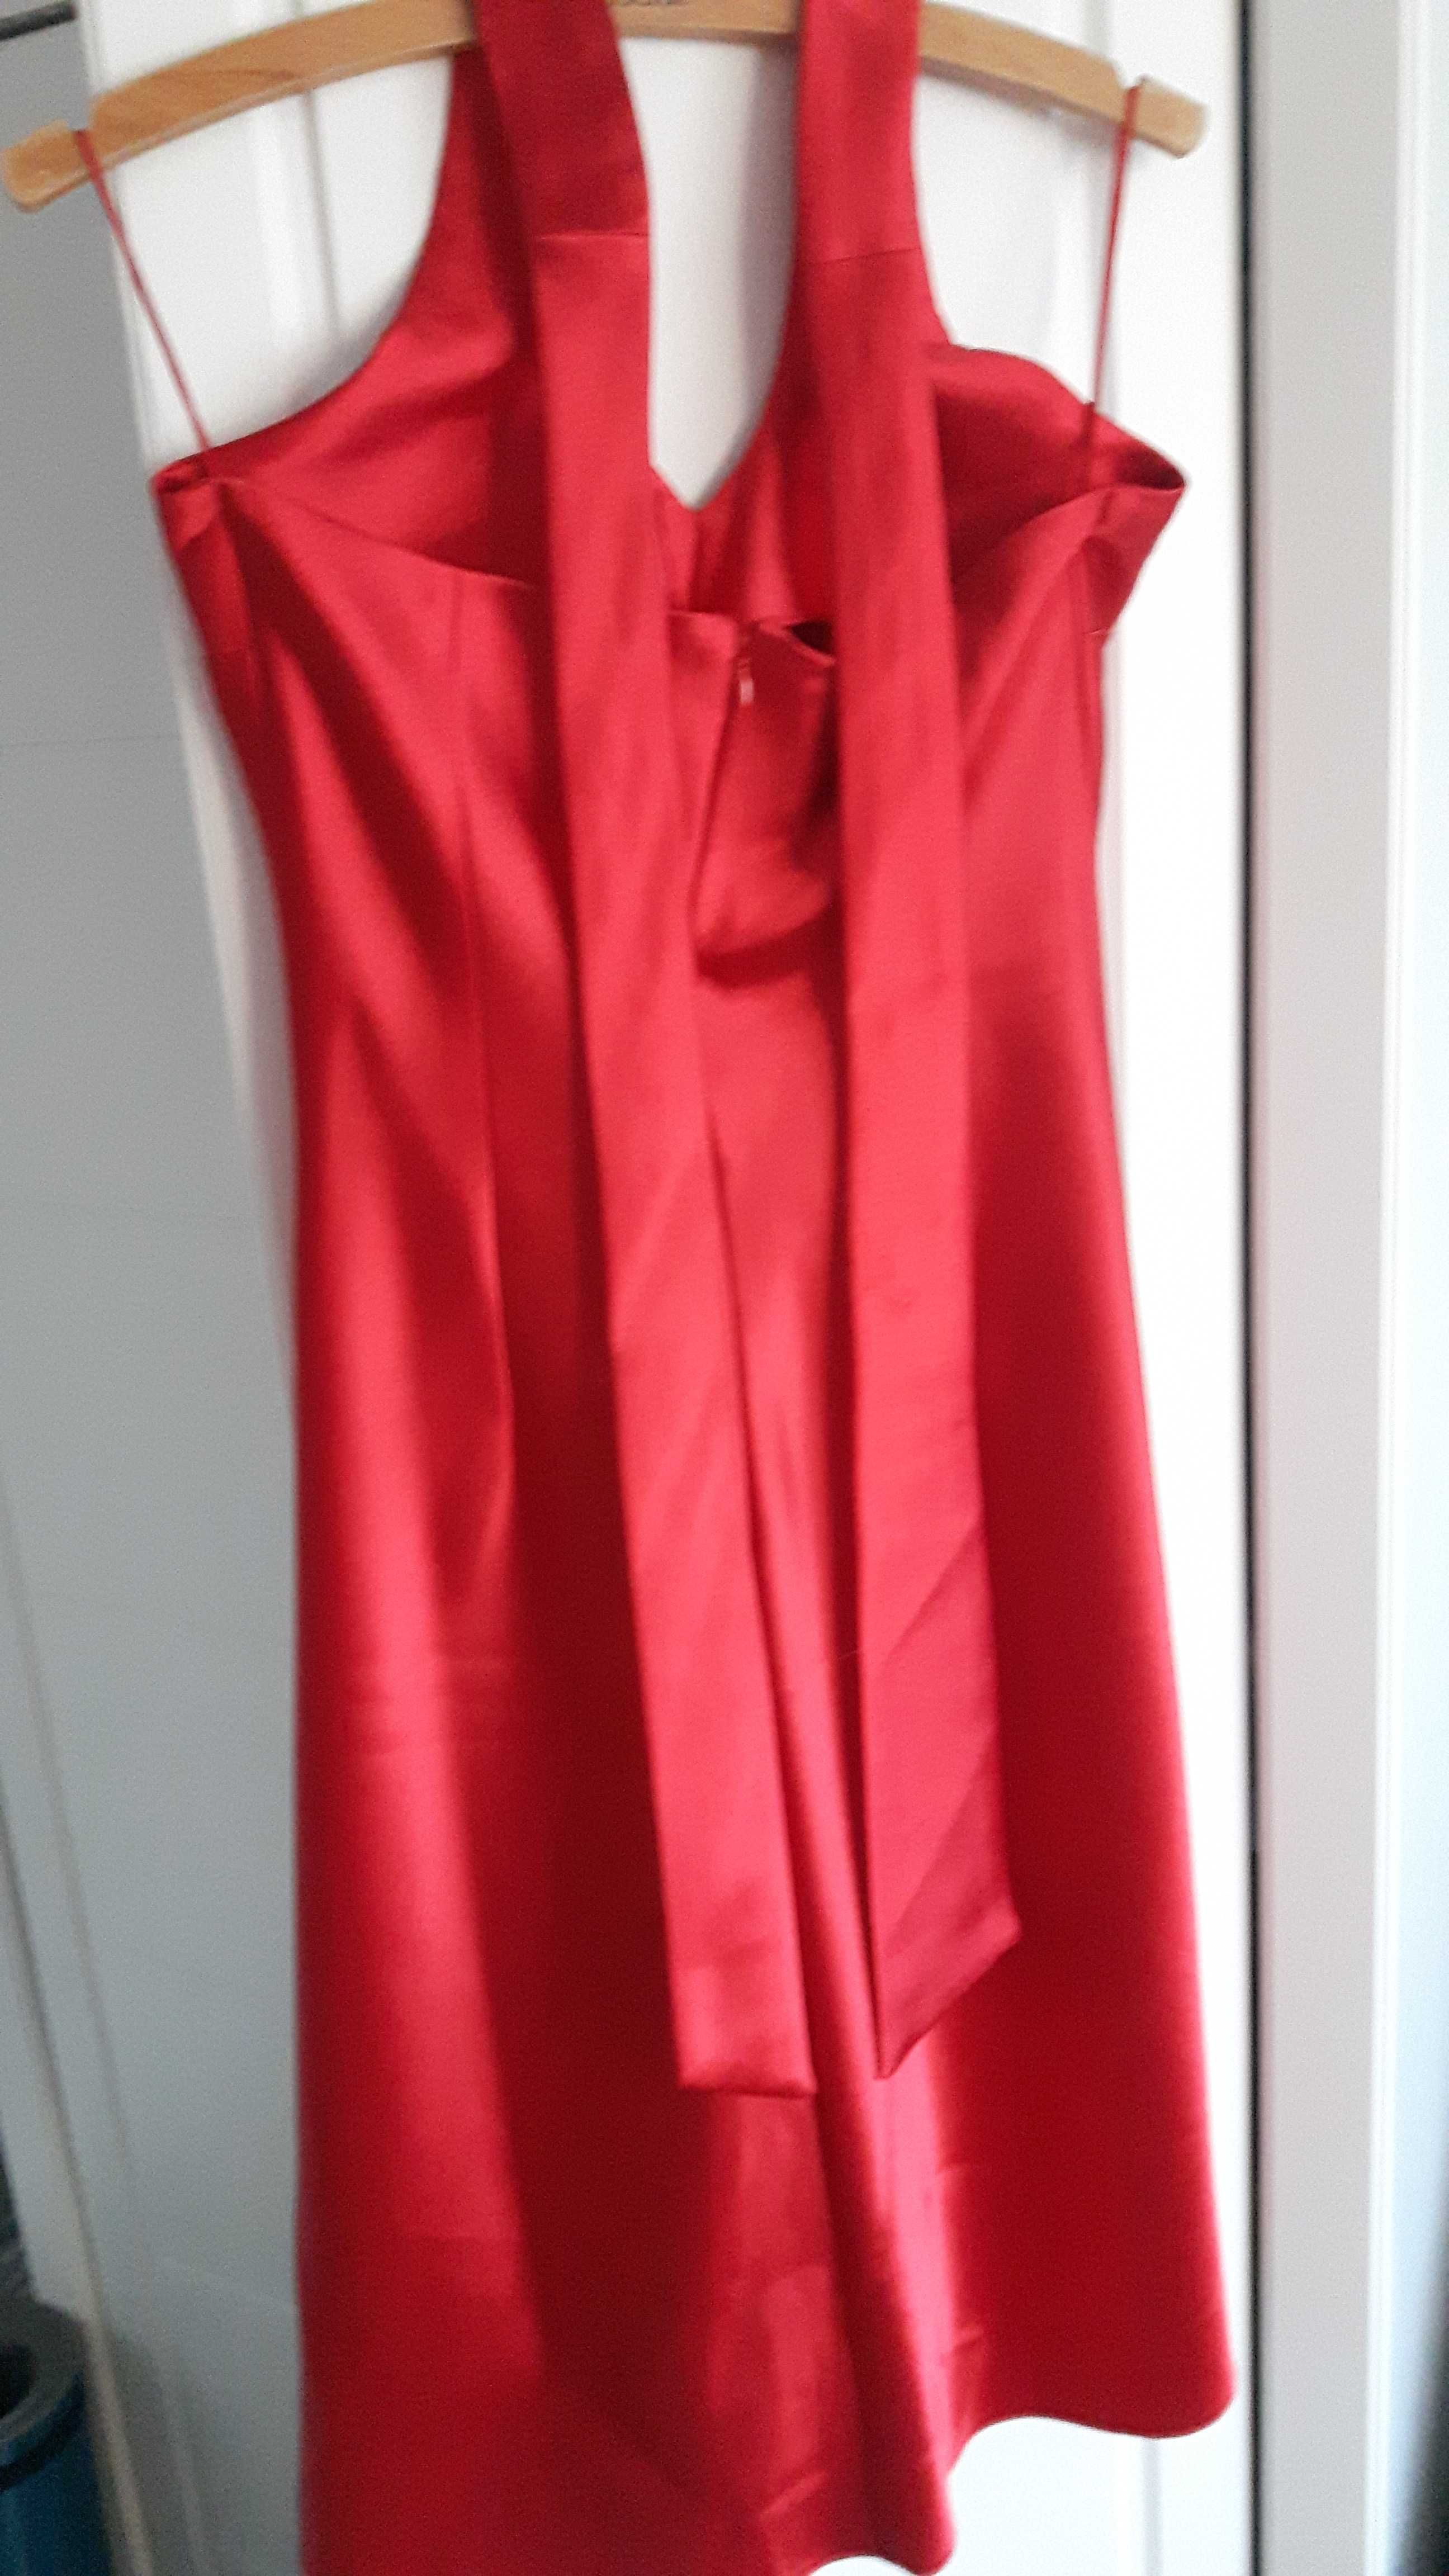 Piękna czerwona sukienka na imprezę.